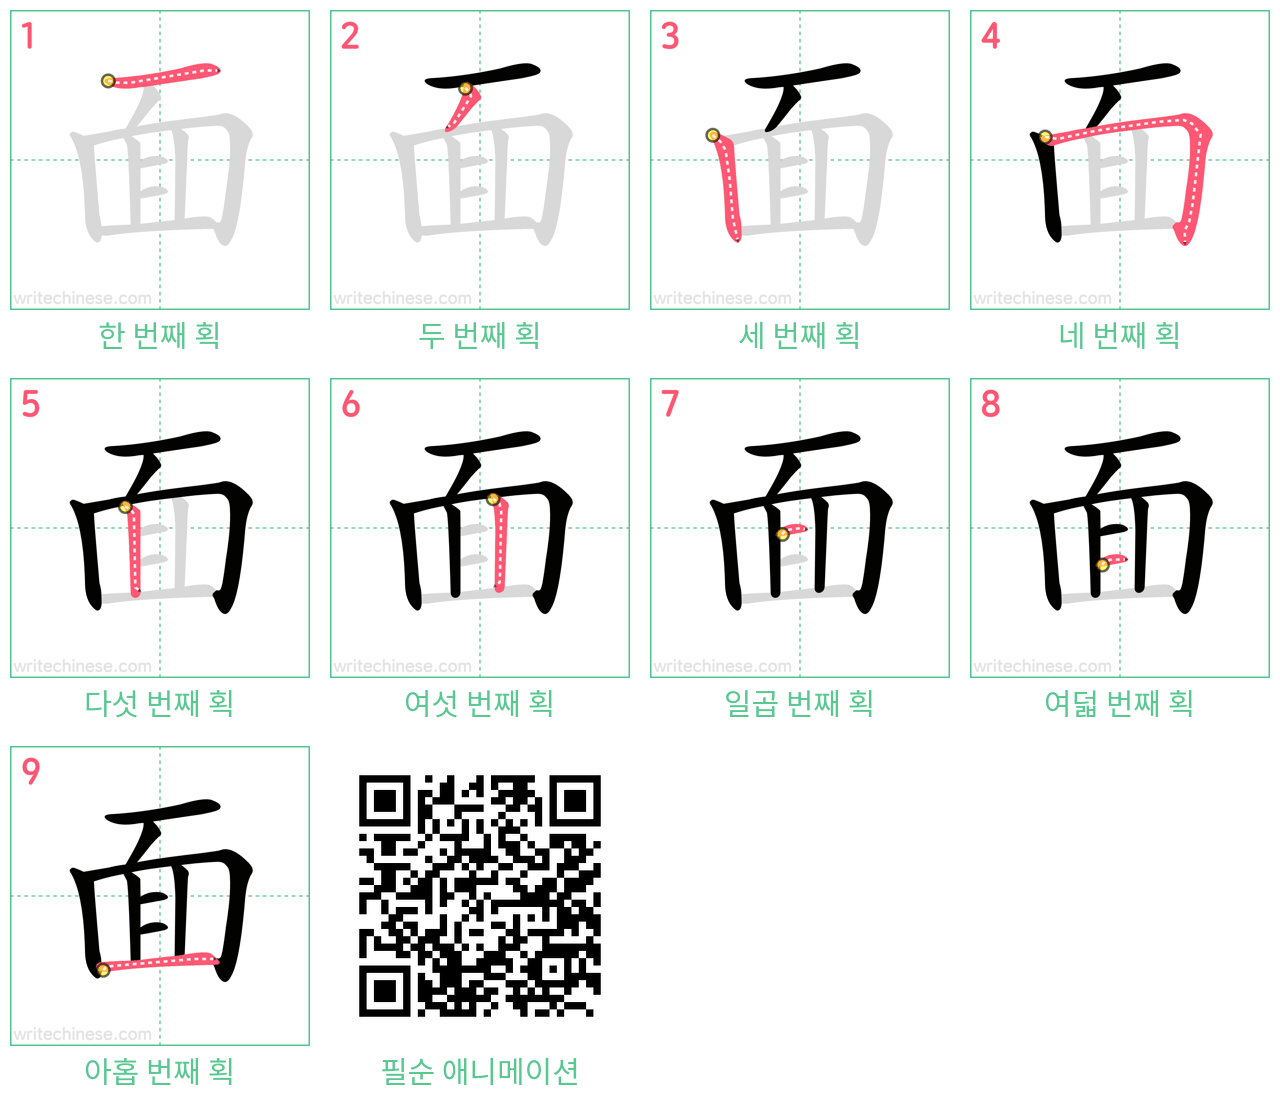 面 step-by-step stroke order diagrams